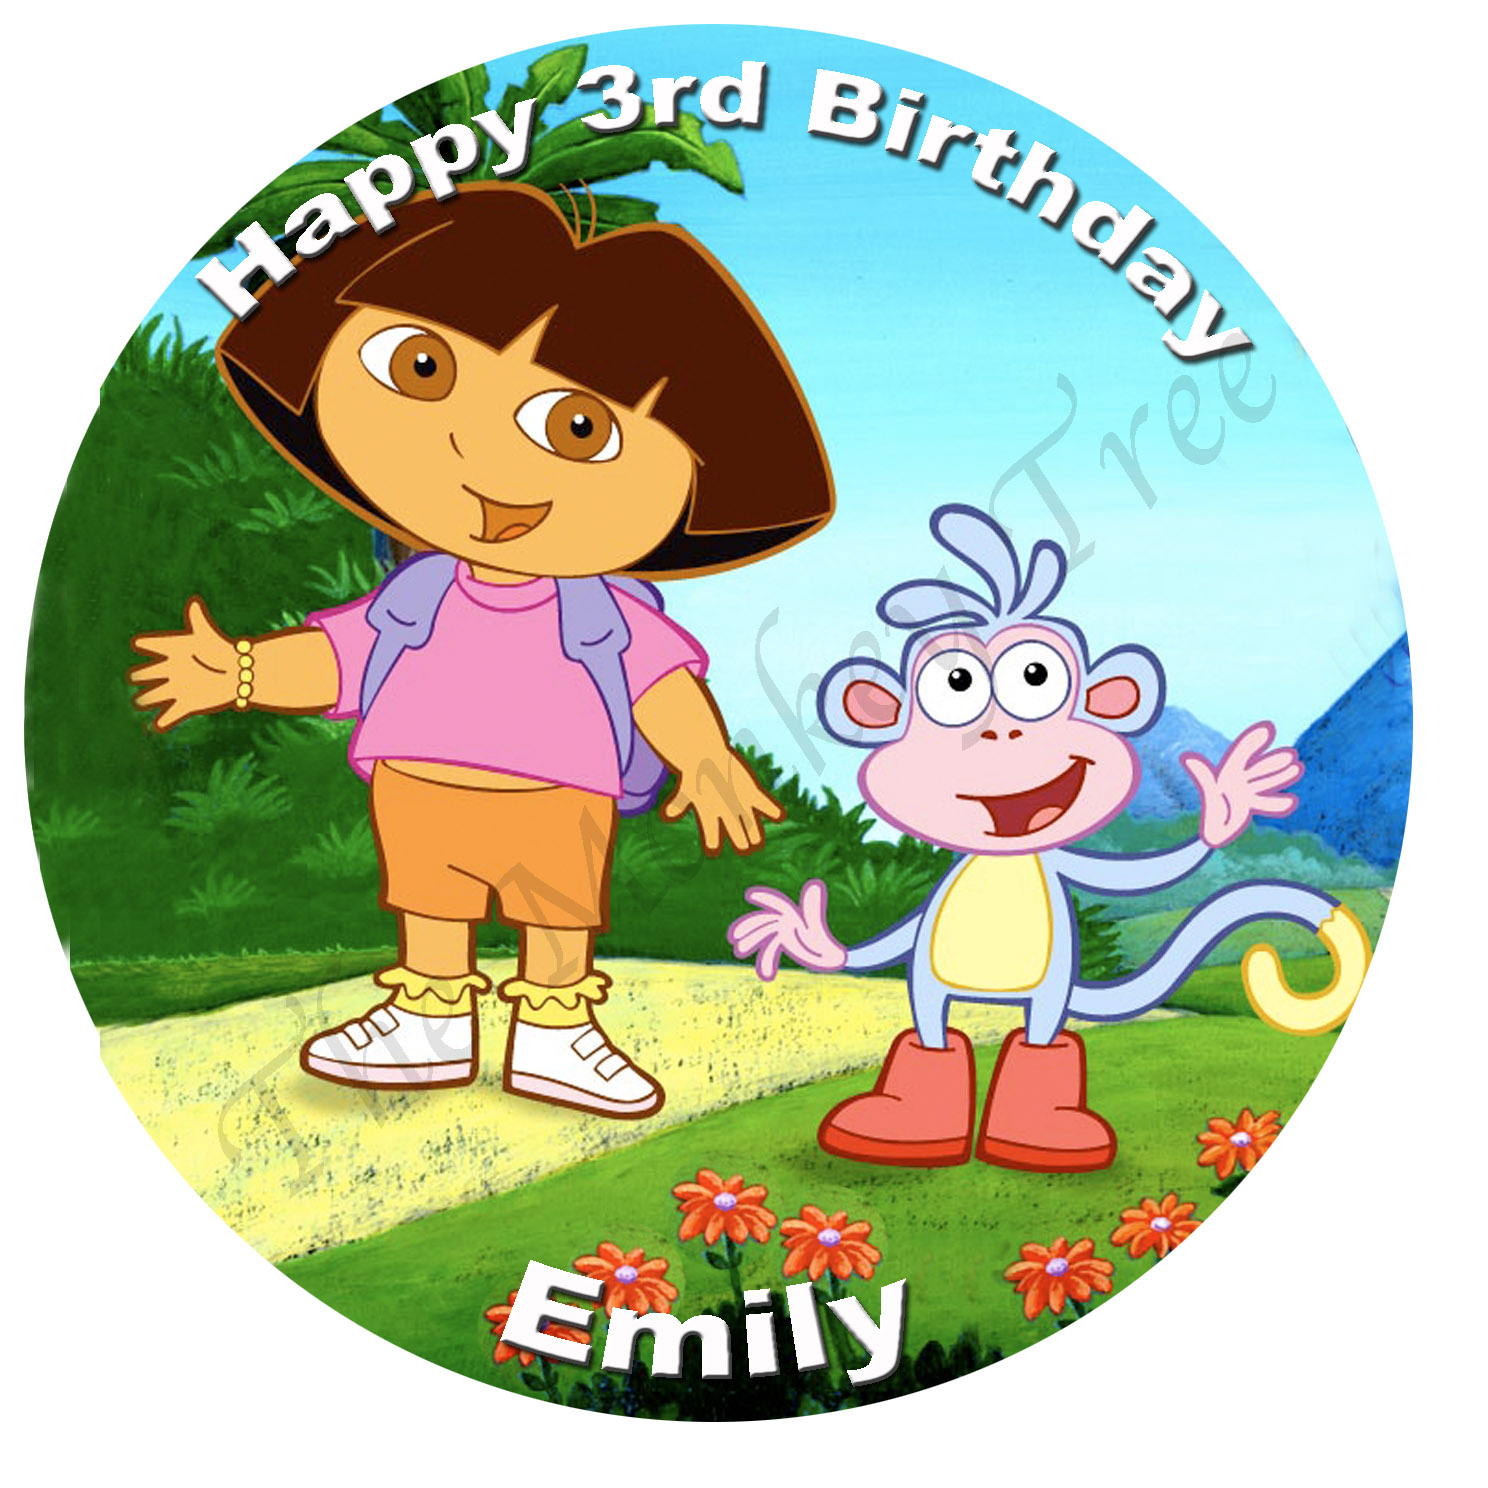 Dora the Explorer Birthday Cake « FoodMayhem